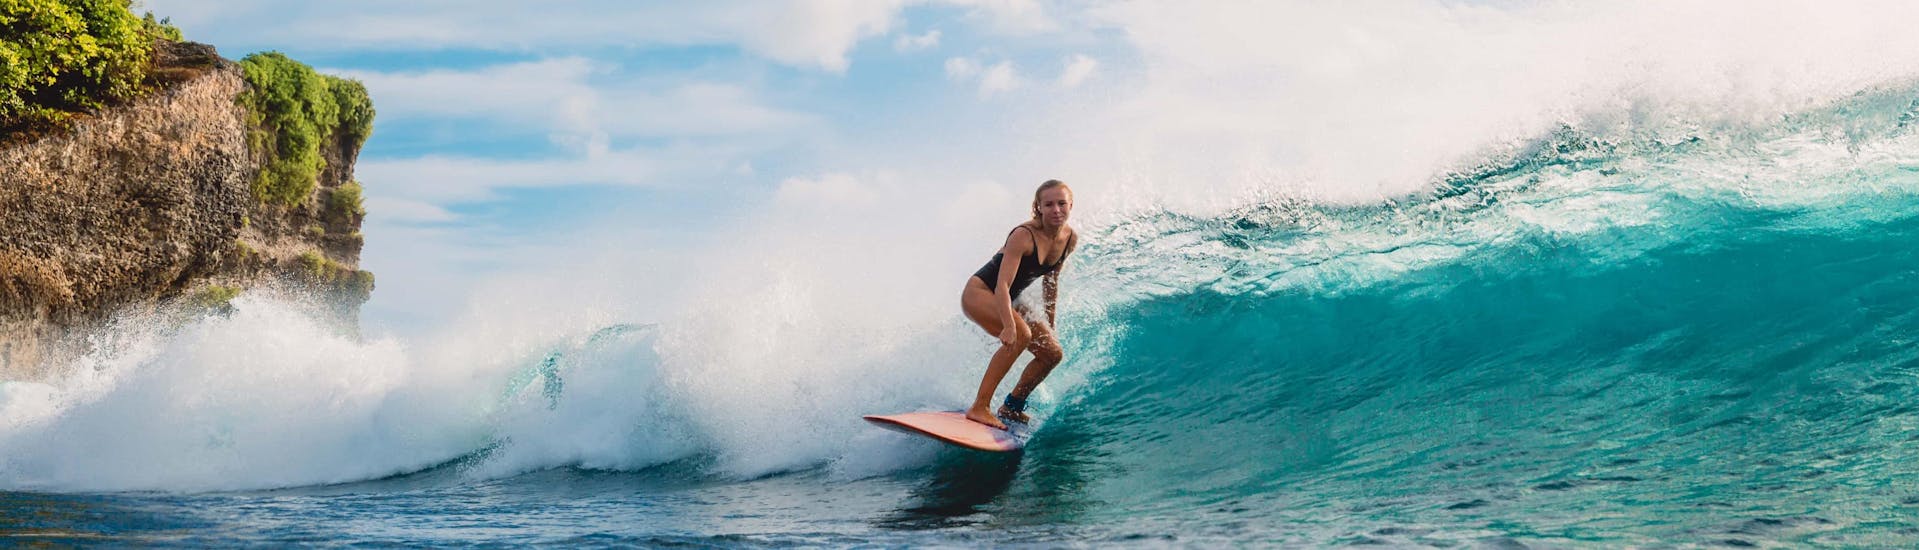 Surfing (c) Shutterstock